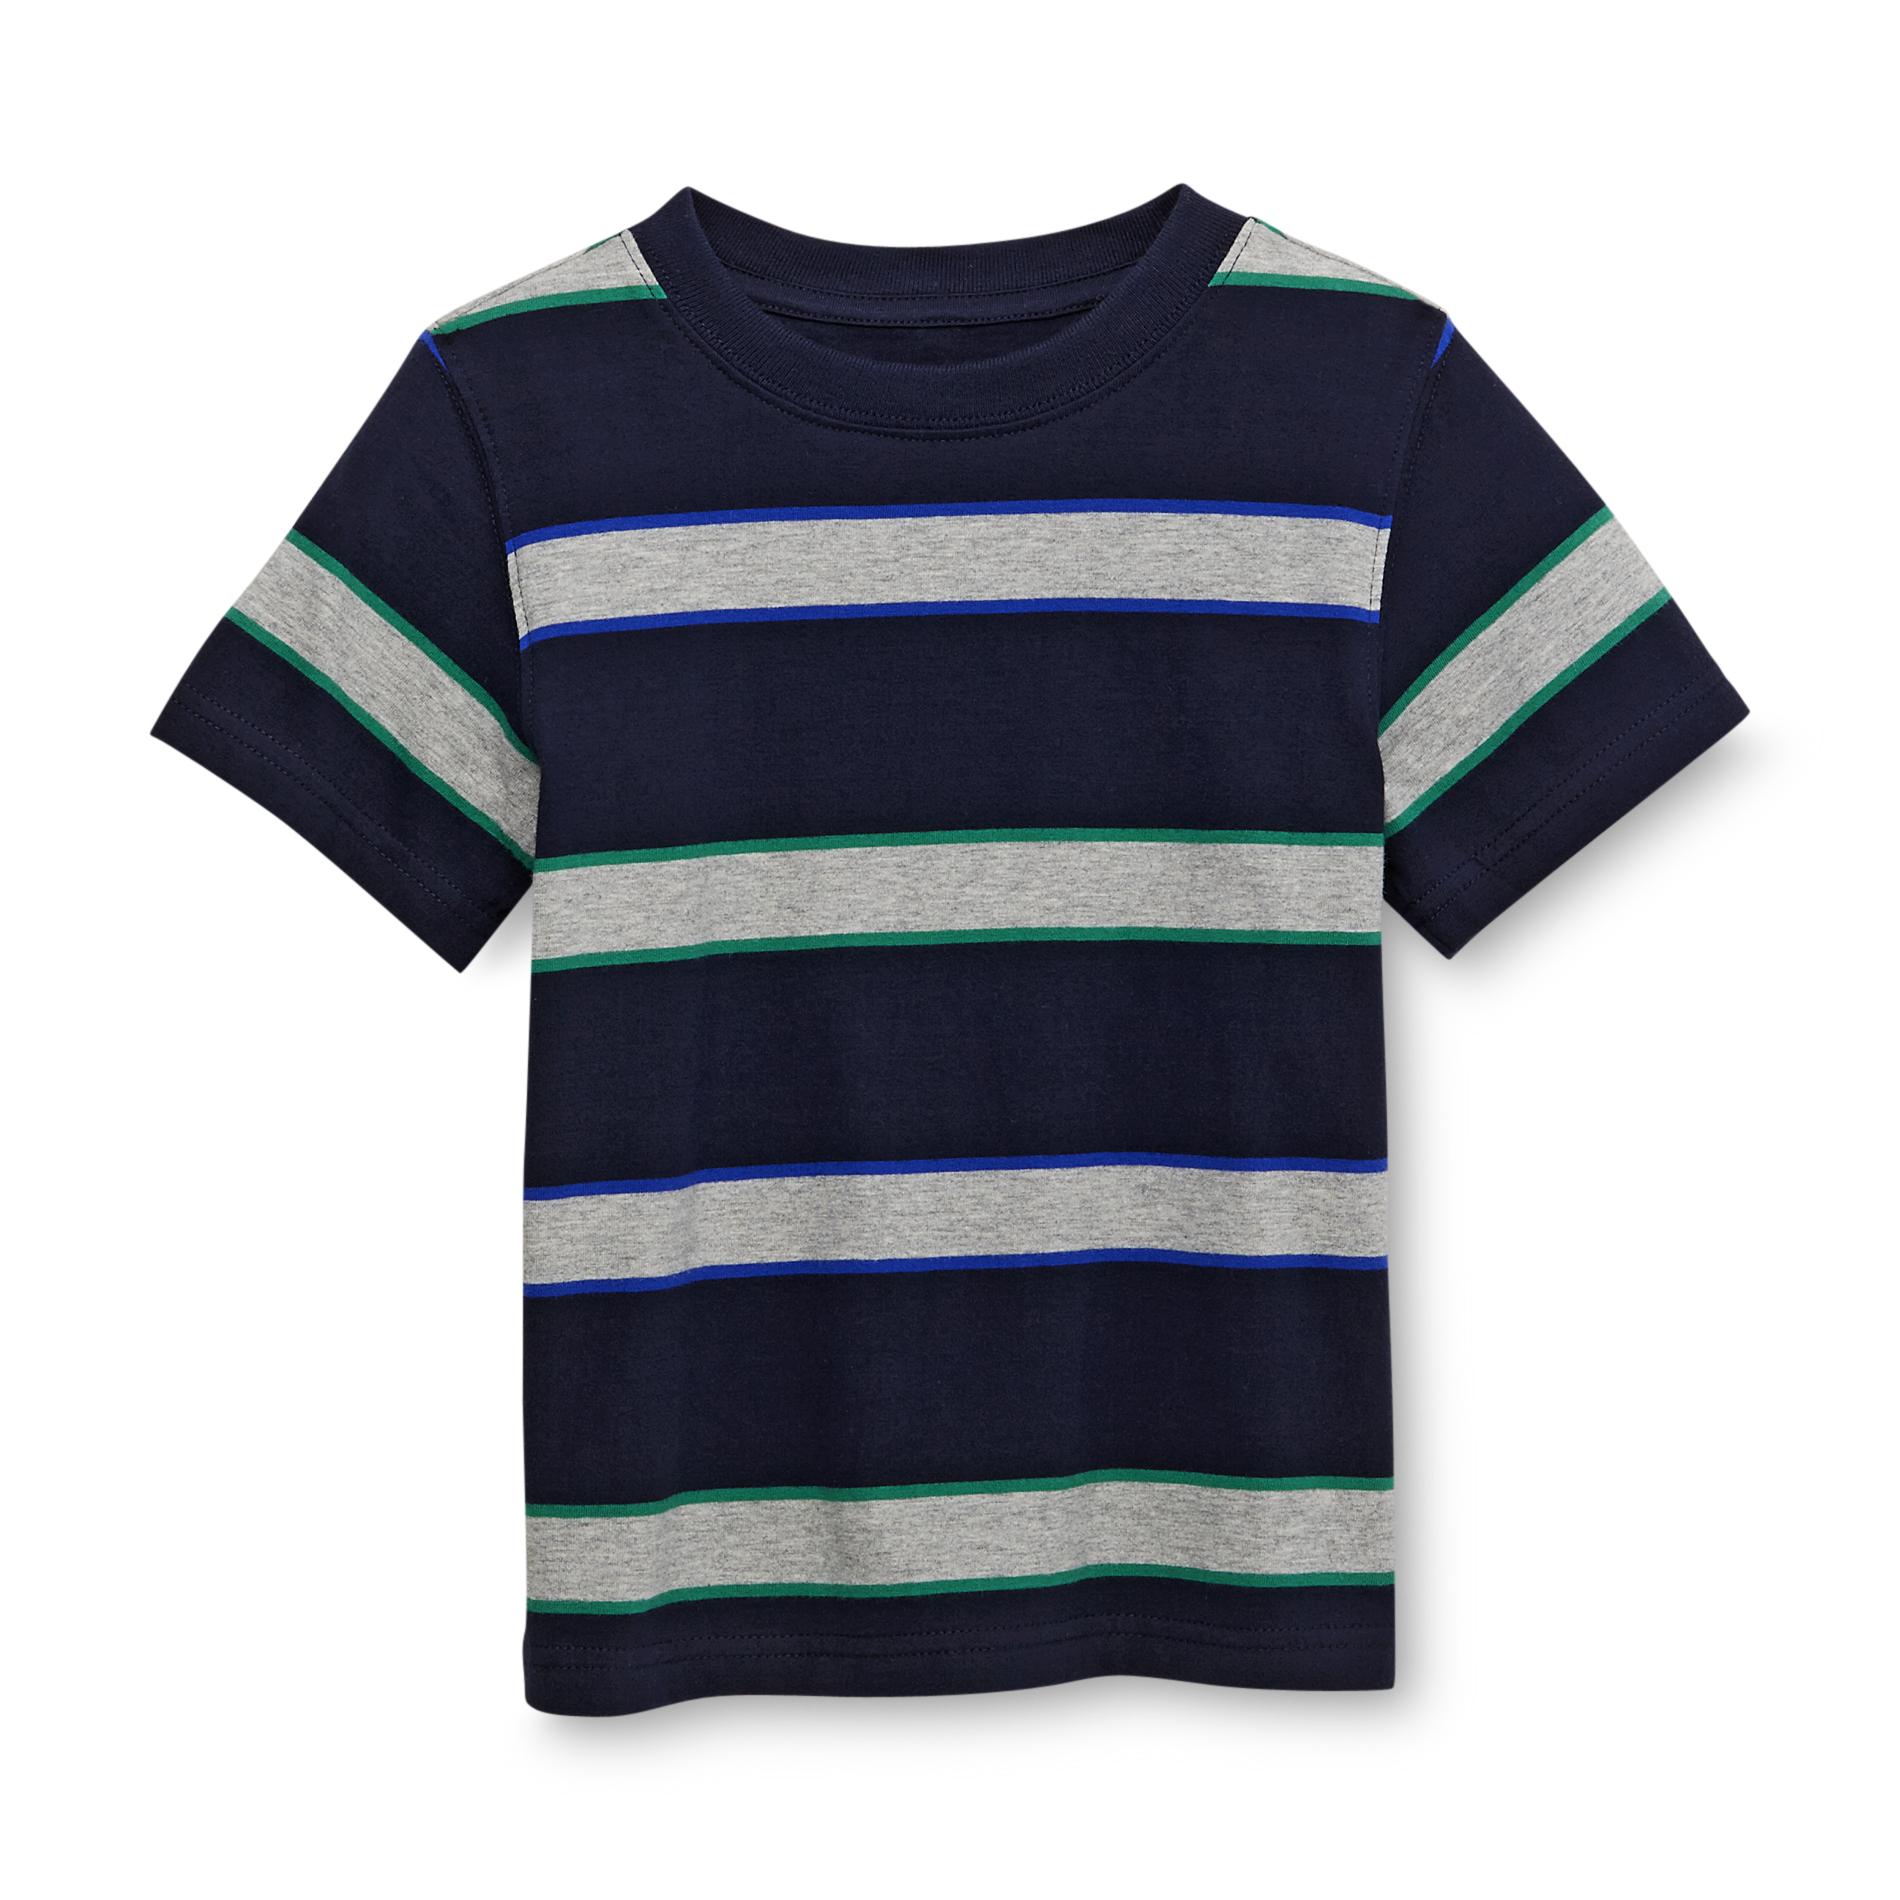 Toughskins Boy's Crew Neck T-Shirt - Striped